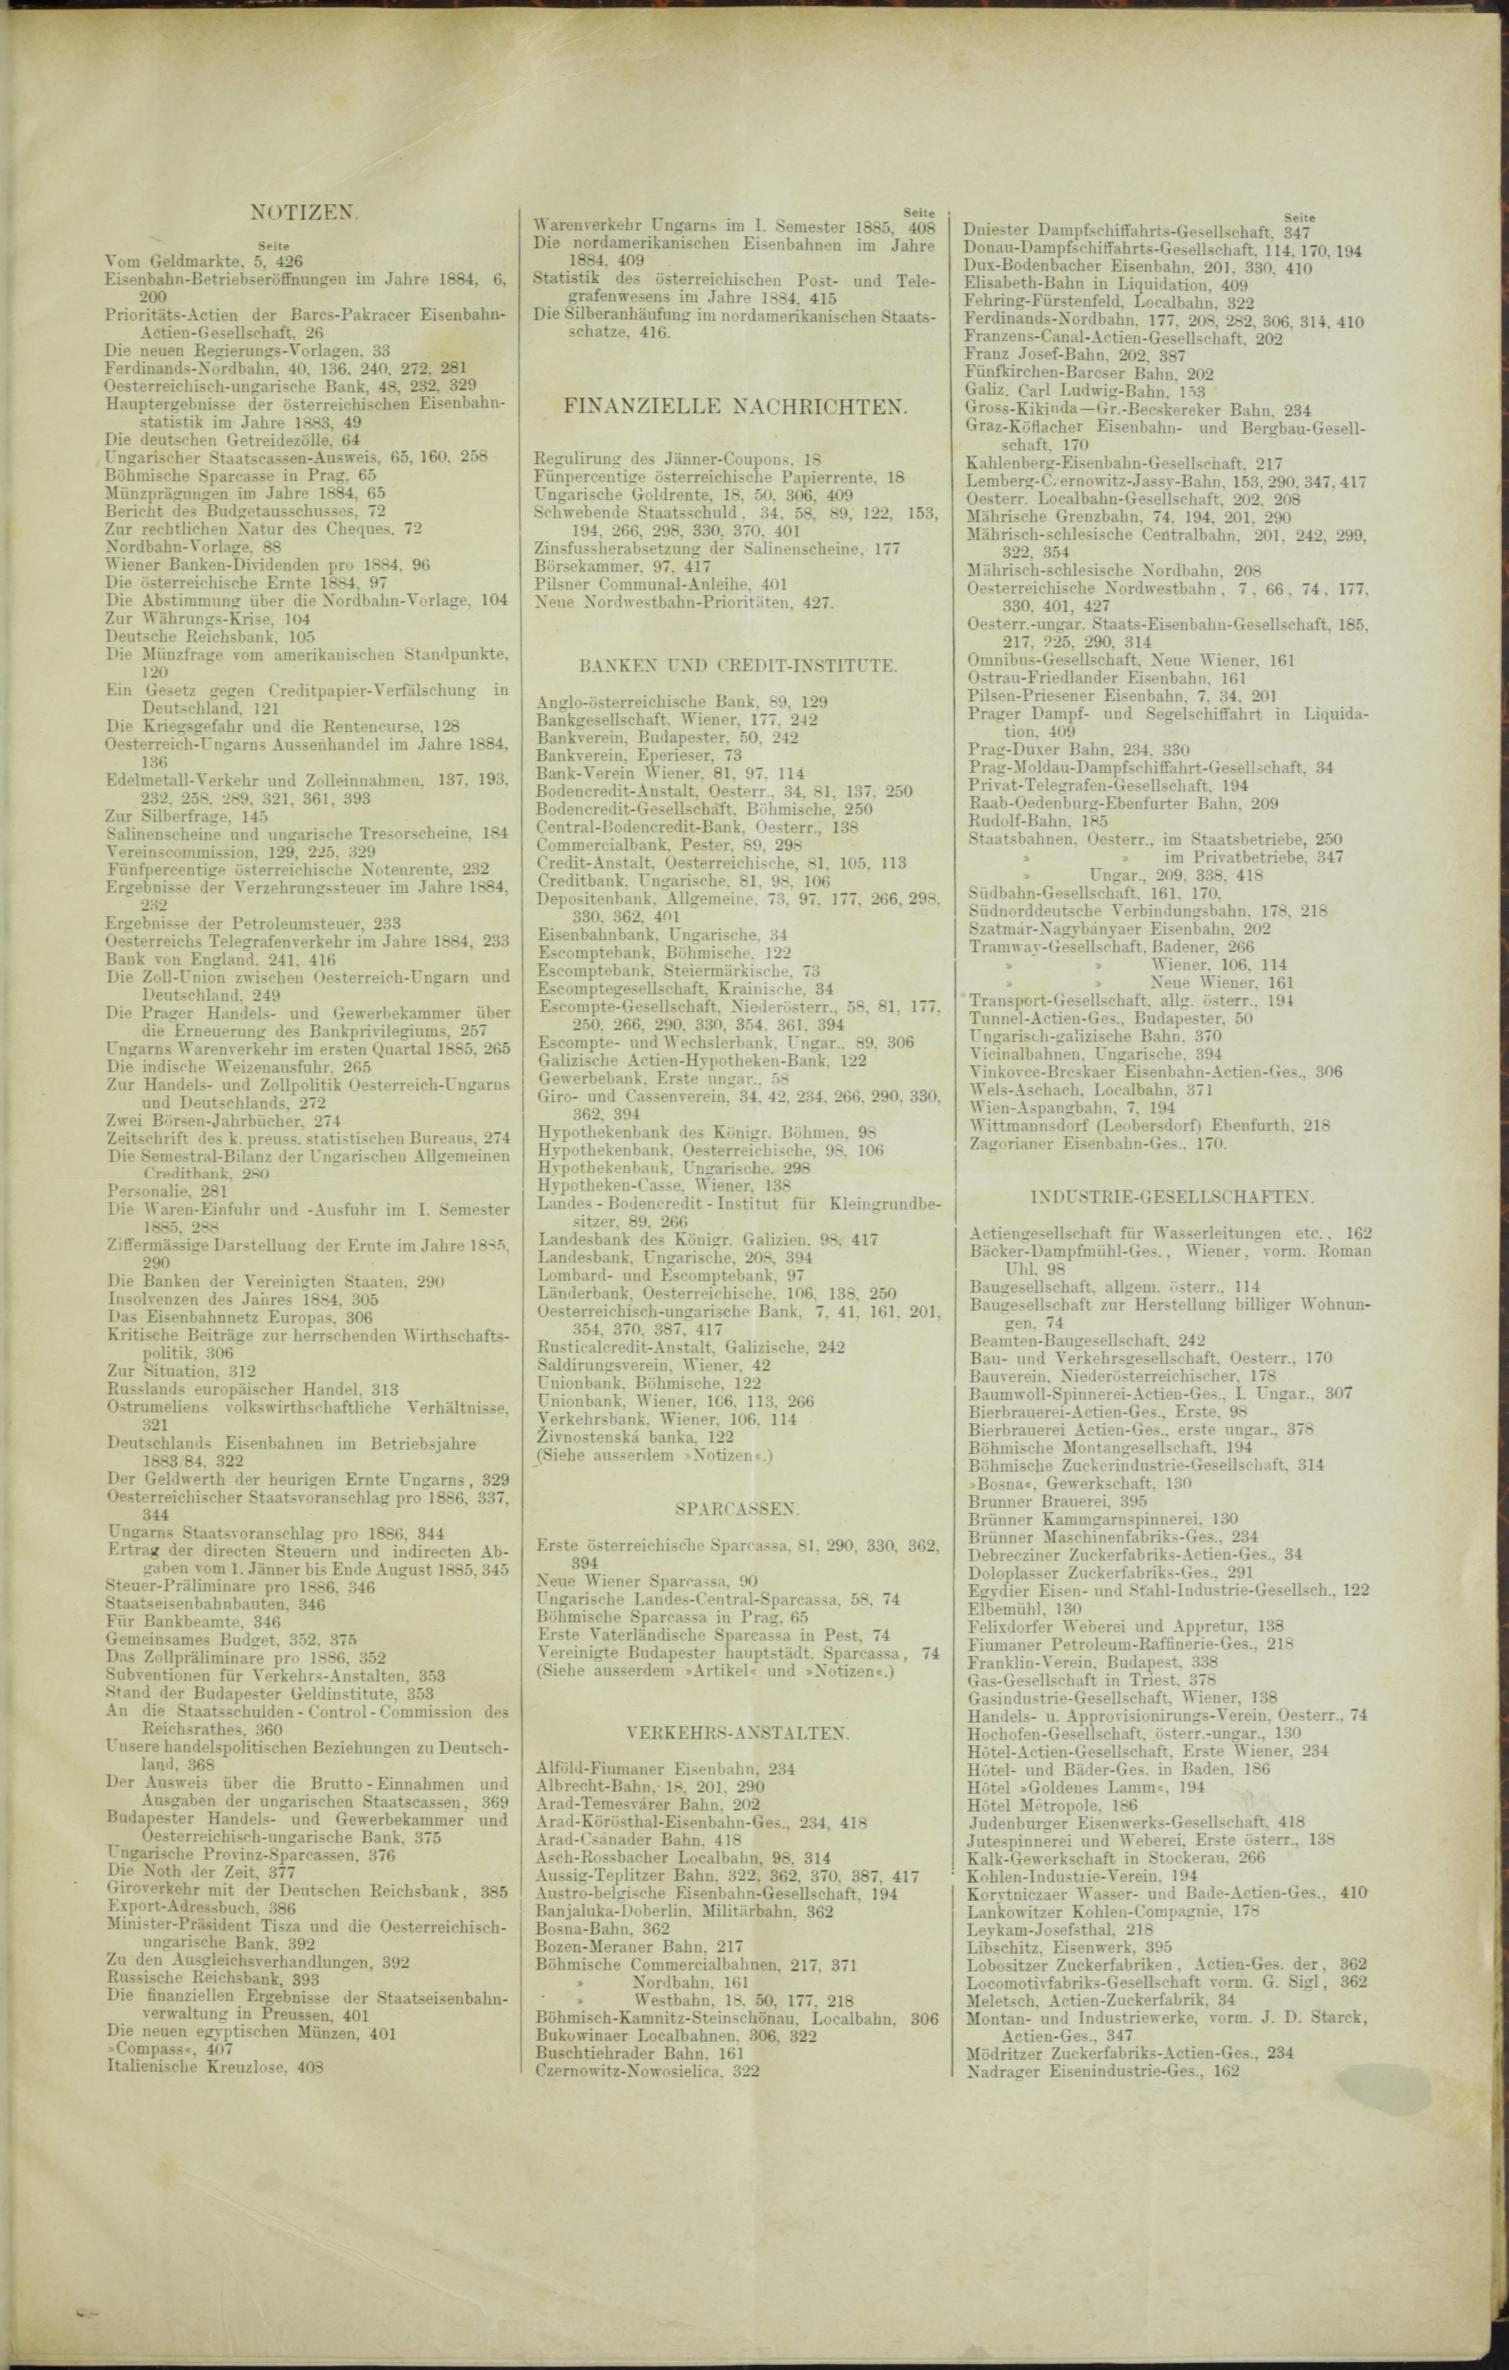 Der Tresor 12.11.1885 - Seite 11